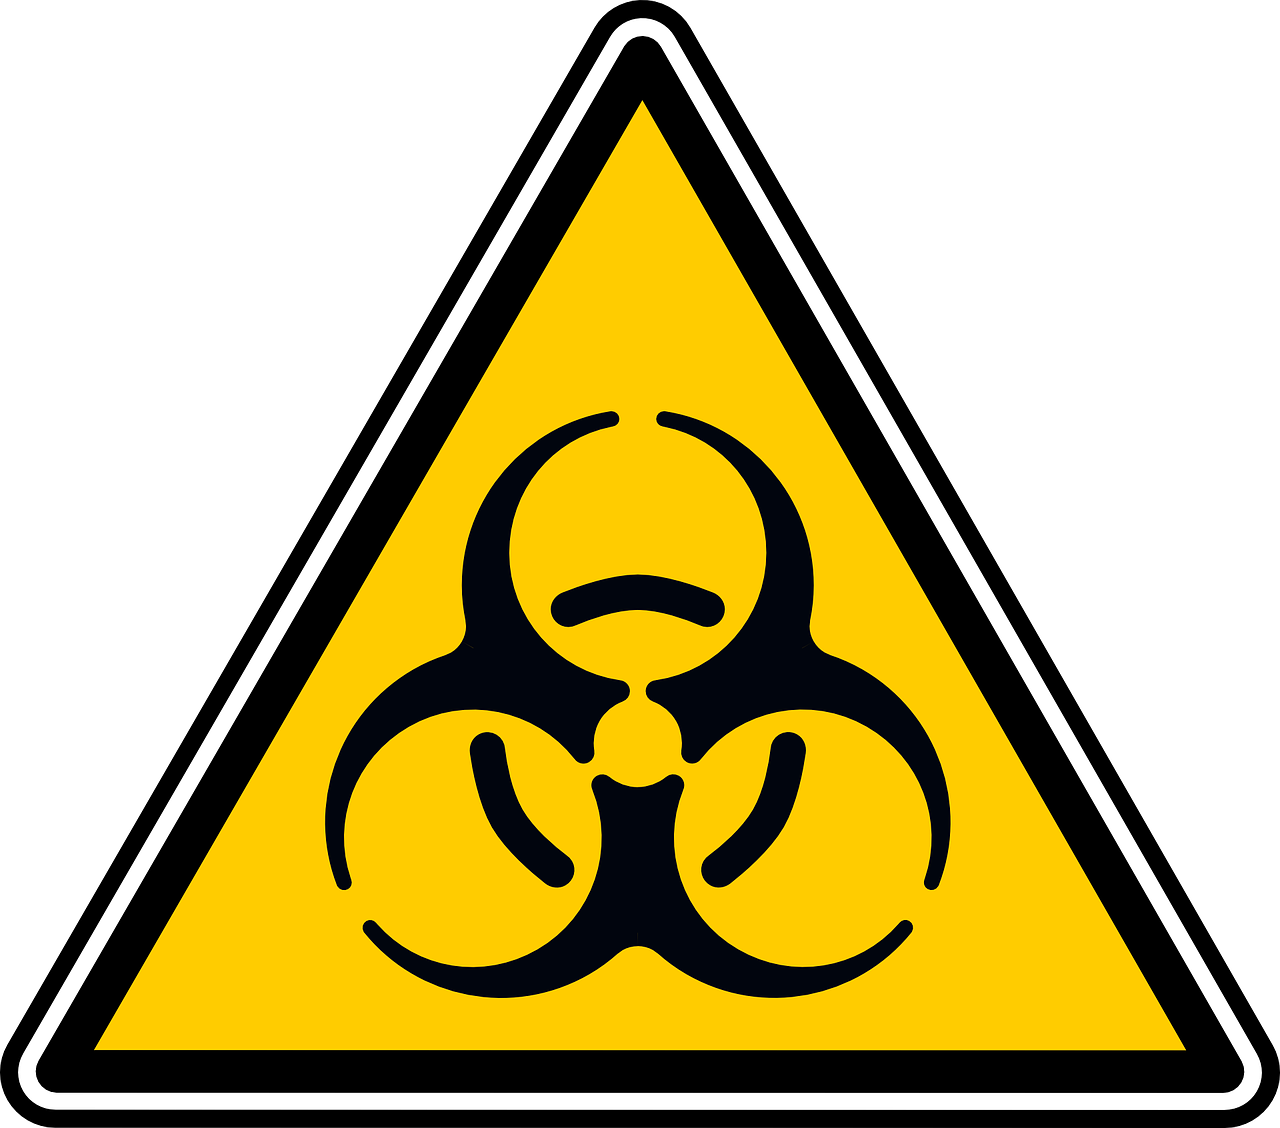 biohazard sign alert free photo